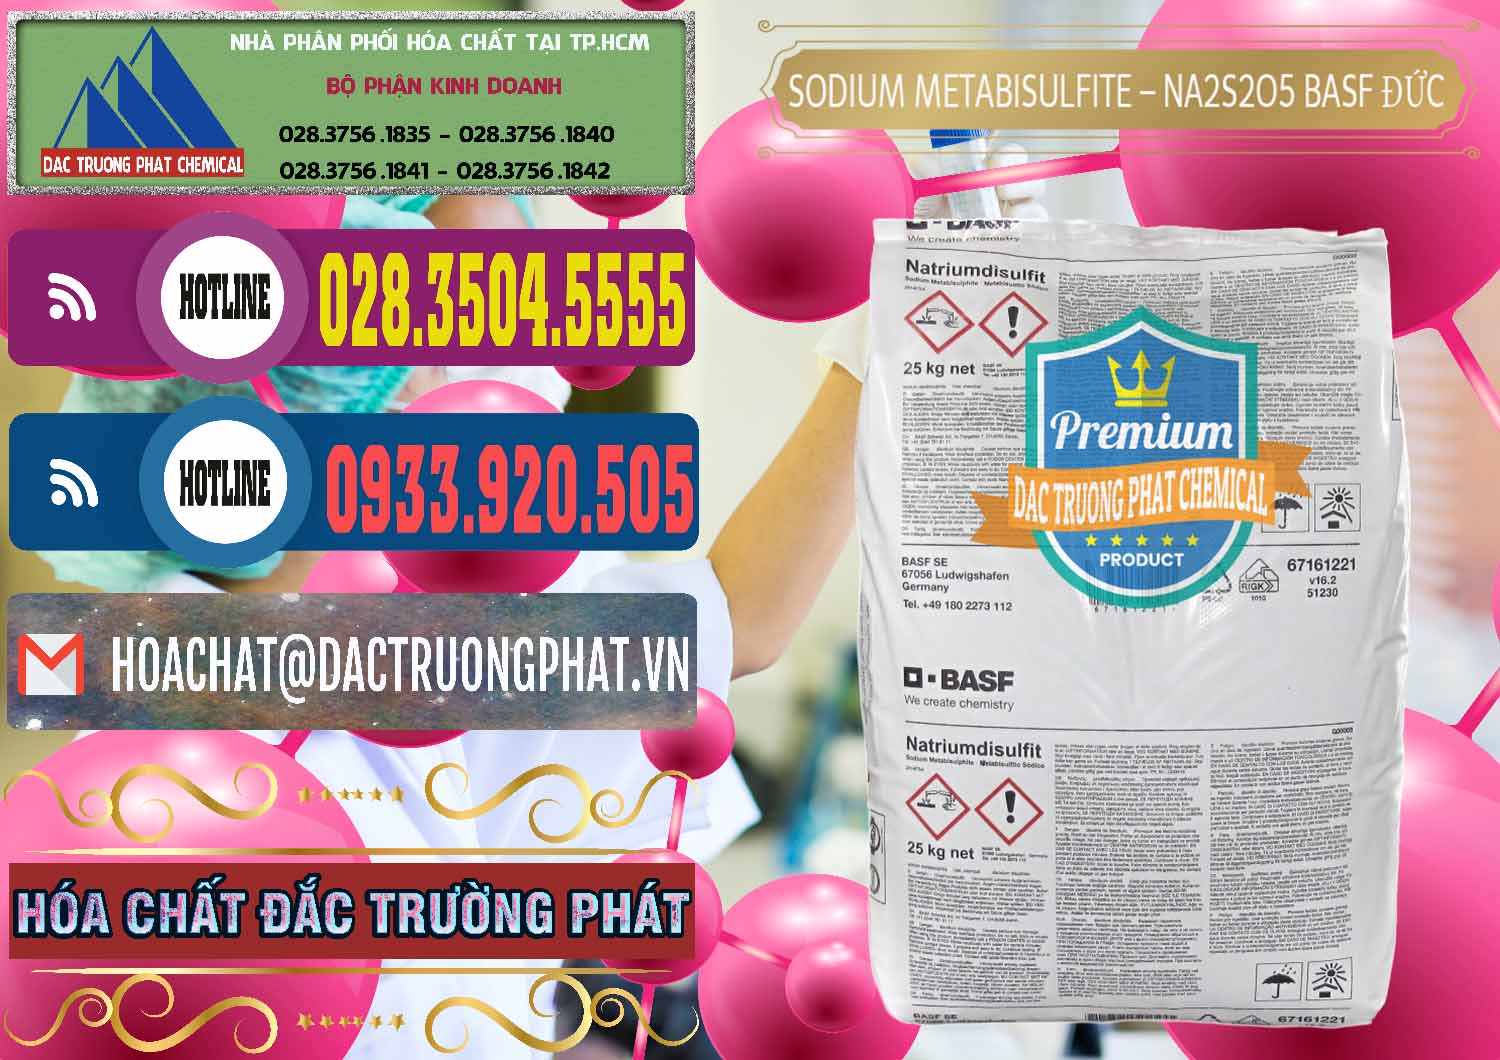 Cty chuyên phân phối và bán Sodium Metabisulfite - NA2S2O5 Food Grade BASF Đức Germany - 0143 - Chuyên cung cấp - phân phối hóa chất tại TP.HCM - muabanhoachat.com.vn